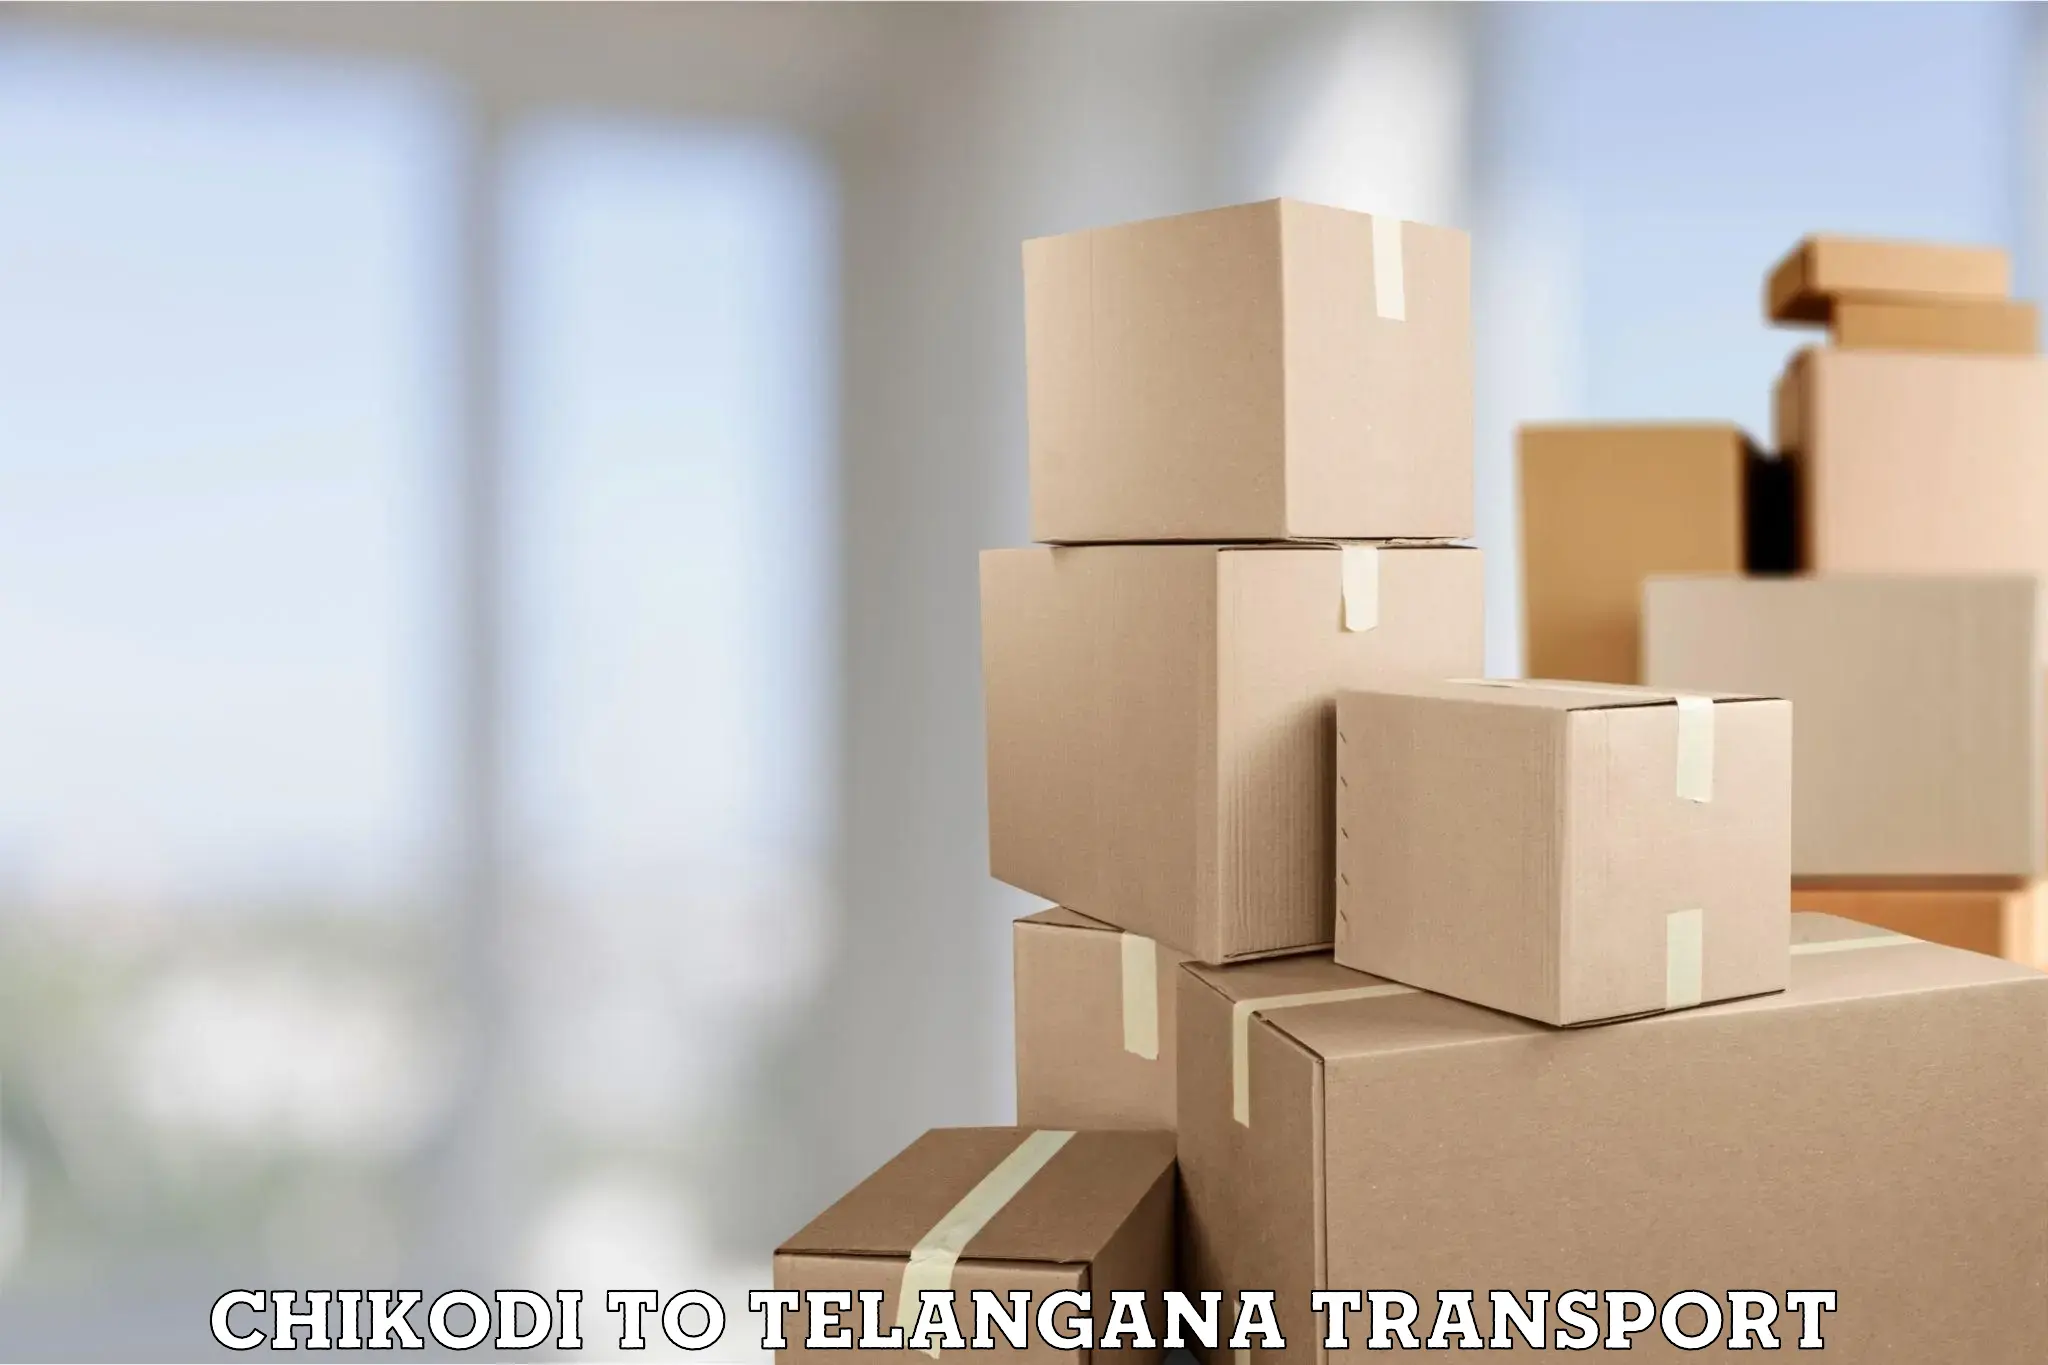 Express transport services Chikodi to Telangana